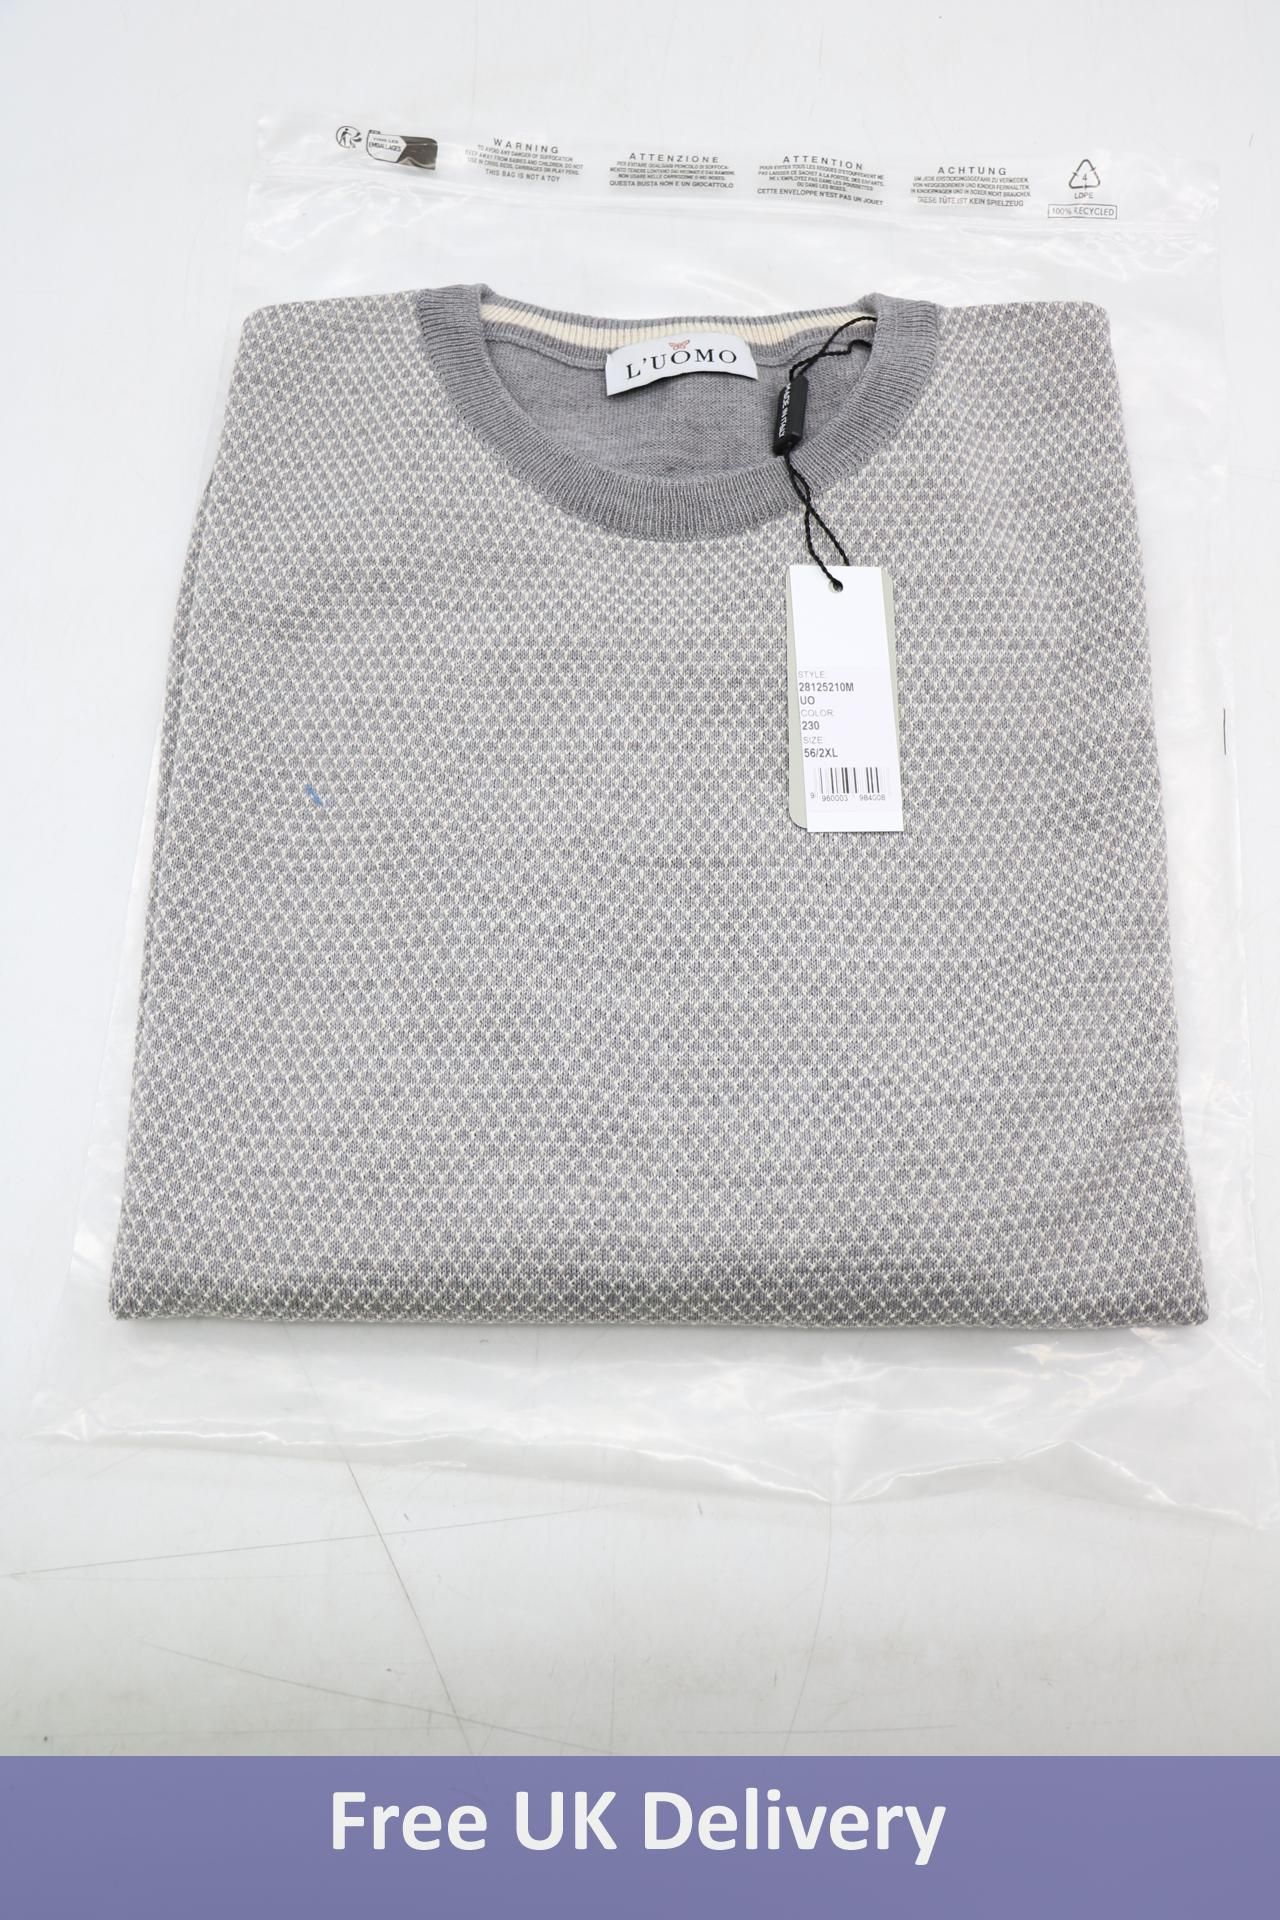 L'uomo Cotton Plain Sweater, Grey, Size XXL